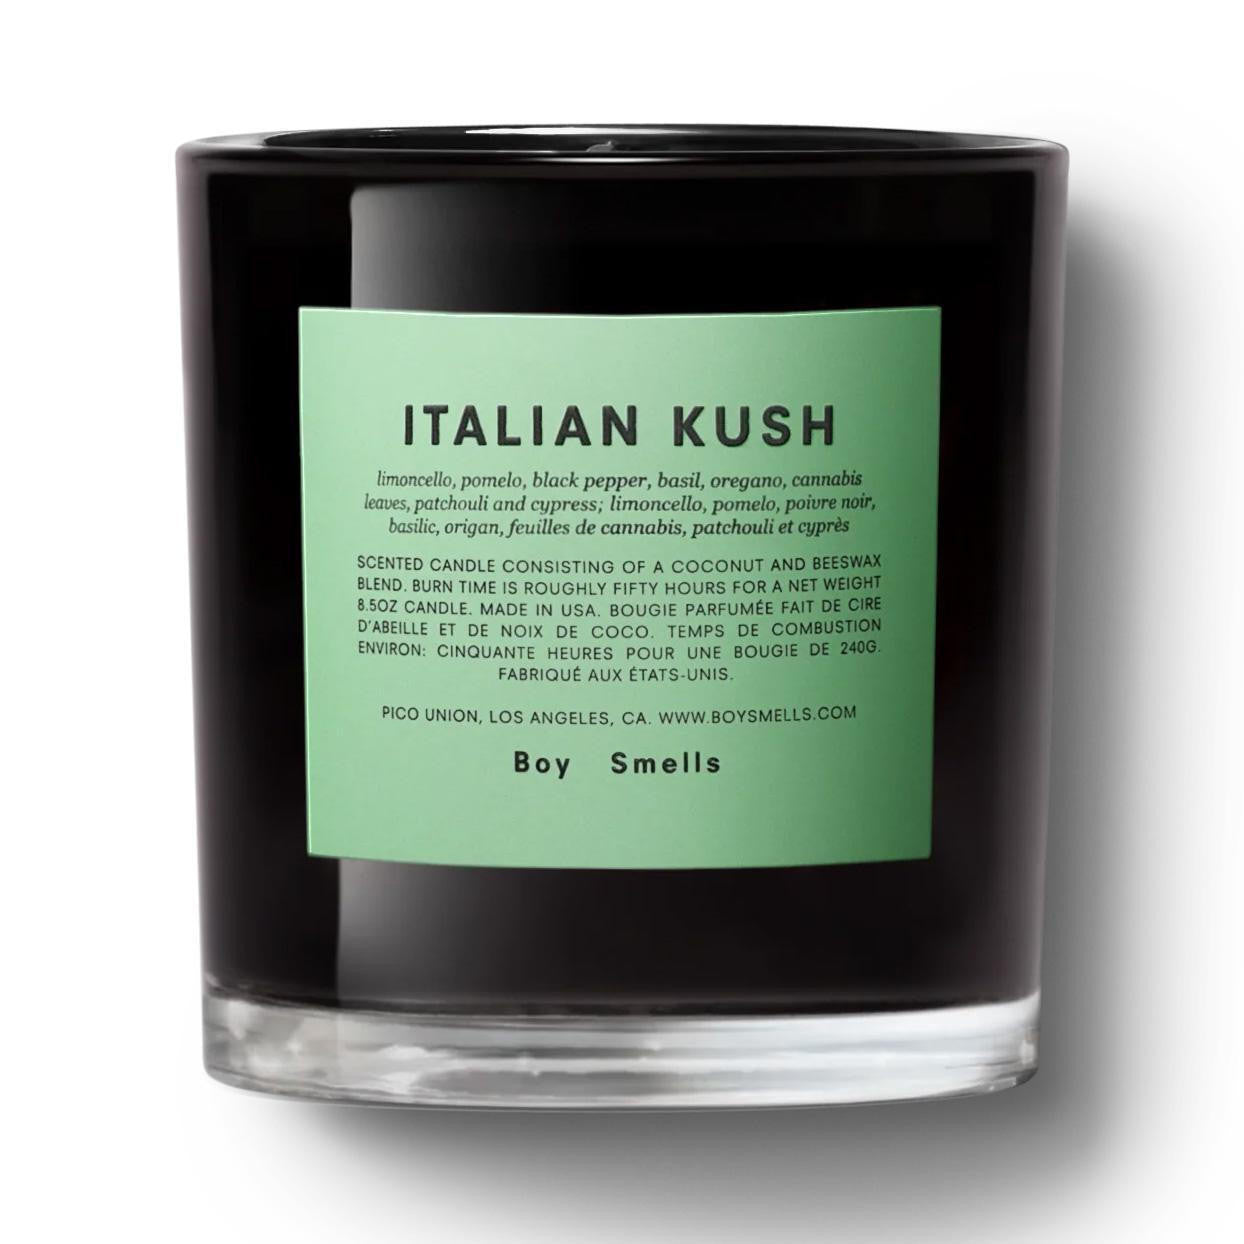  Boy Smells ITALIAN KUSH Candle 